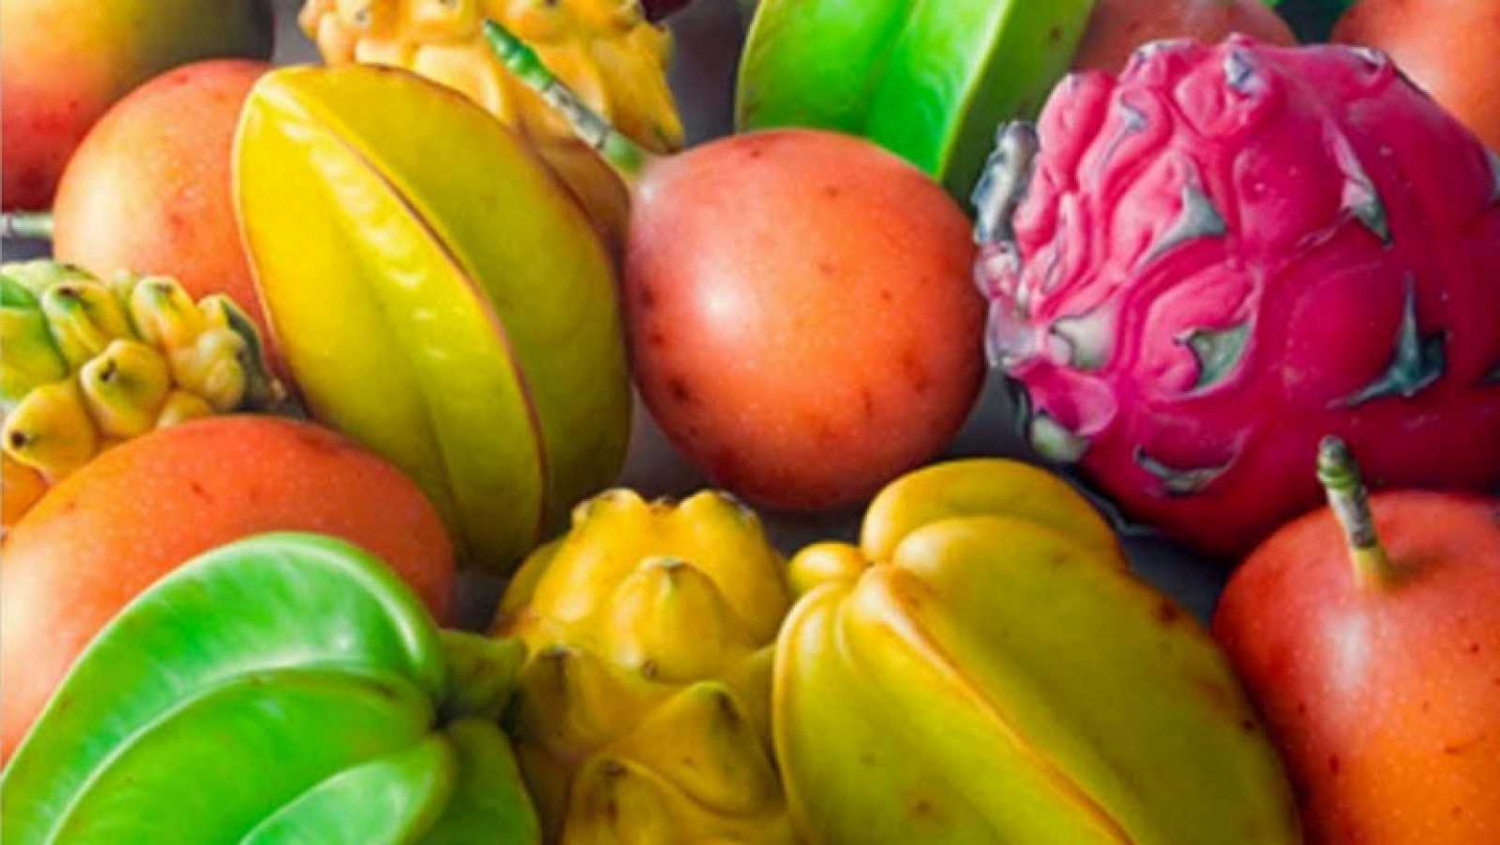 Frutas exóticas de chiapas - 🧡 Rambután el fruto exótico de Chiapas.